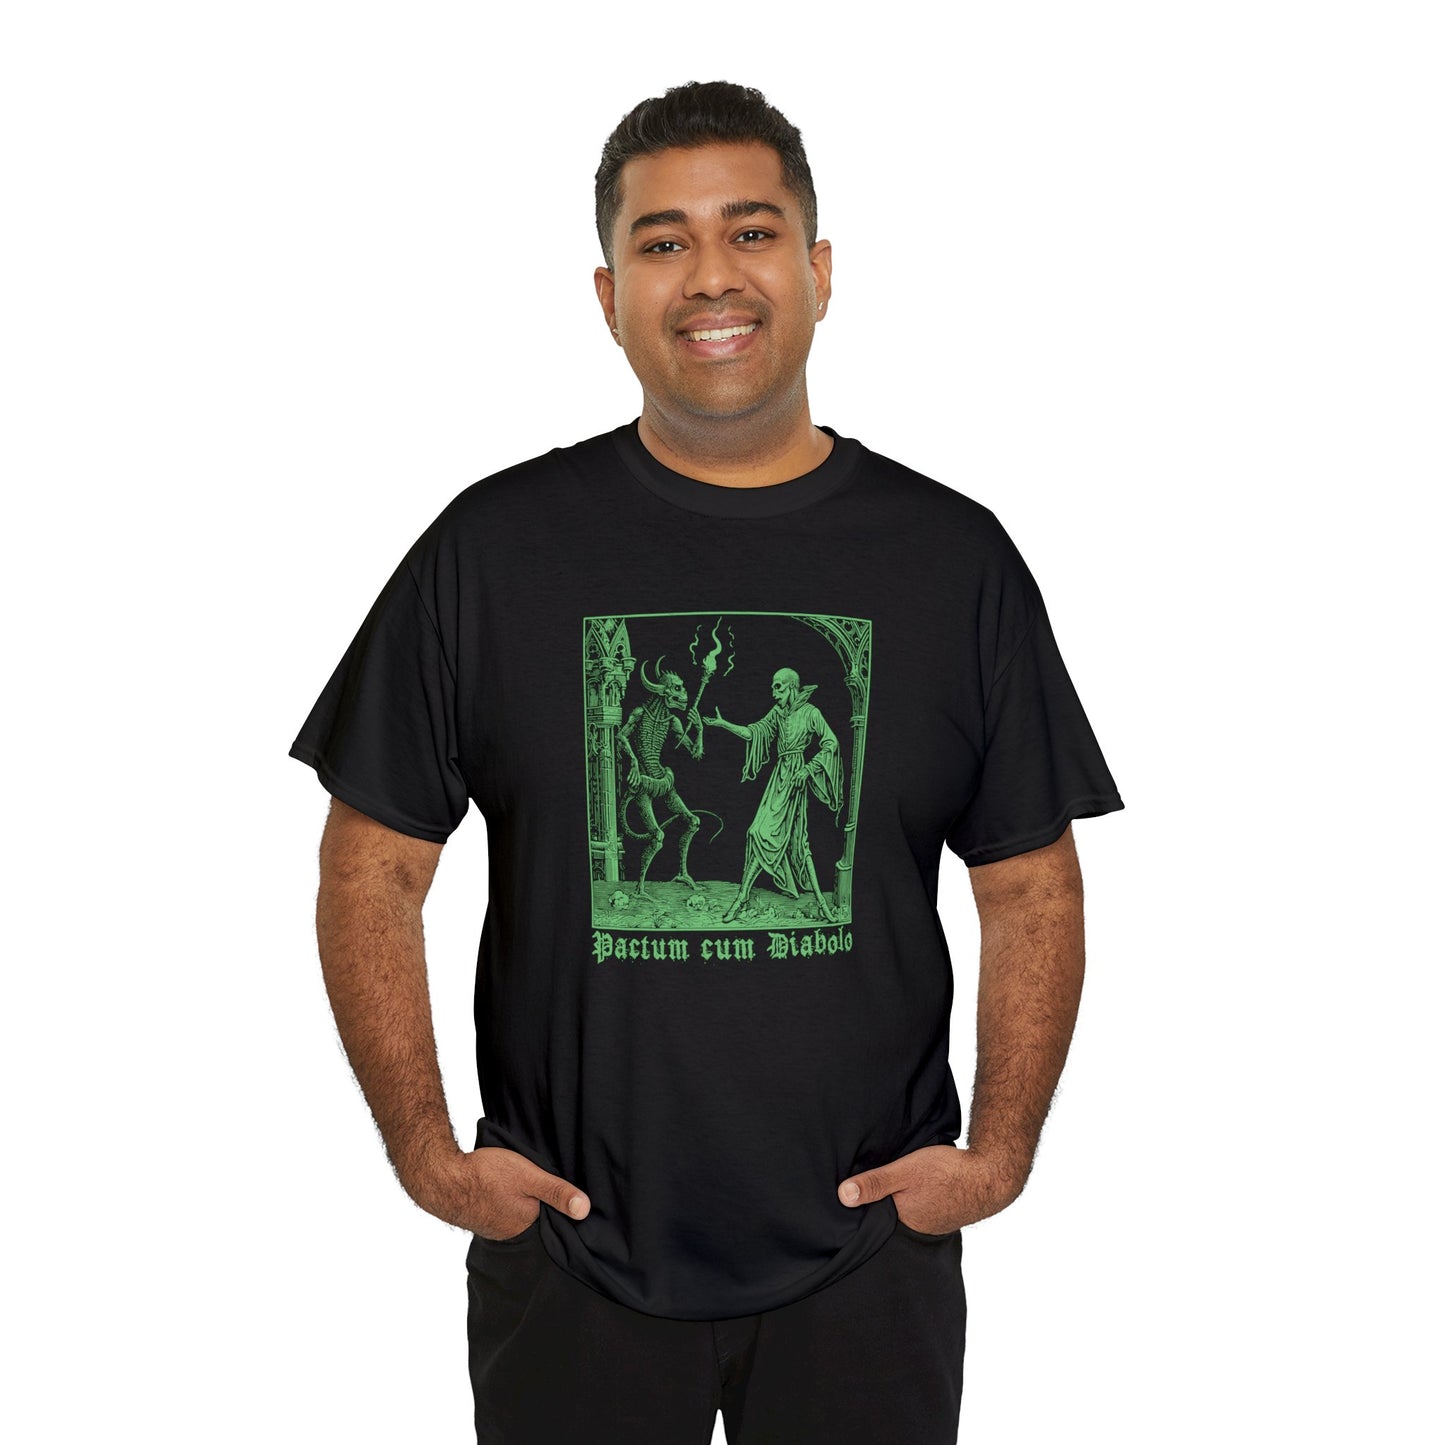 Unisex T-shirt Pactum cum Diabolo in Green - Frogos Design